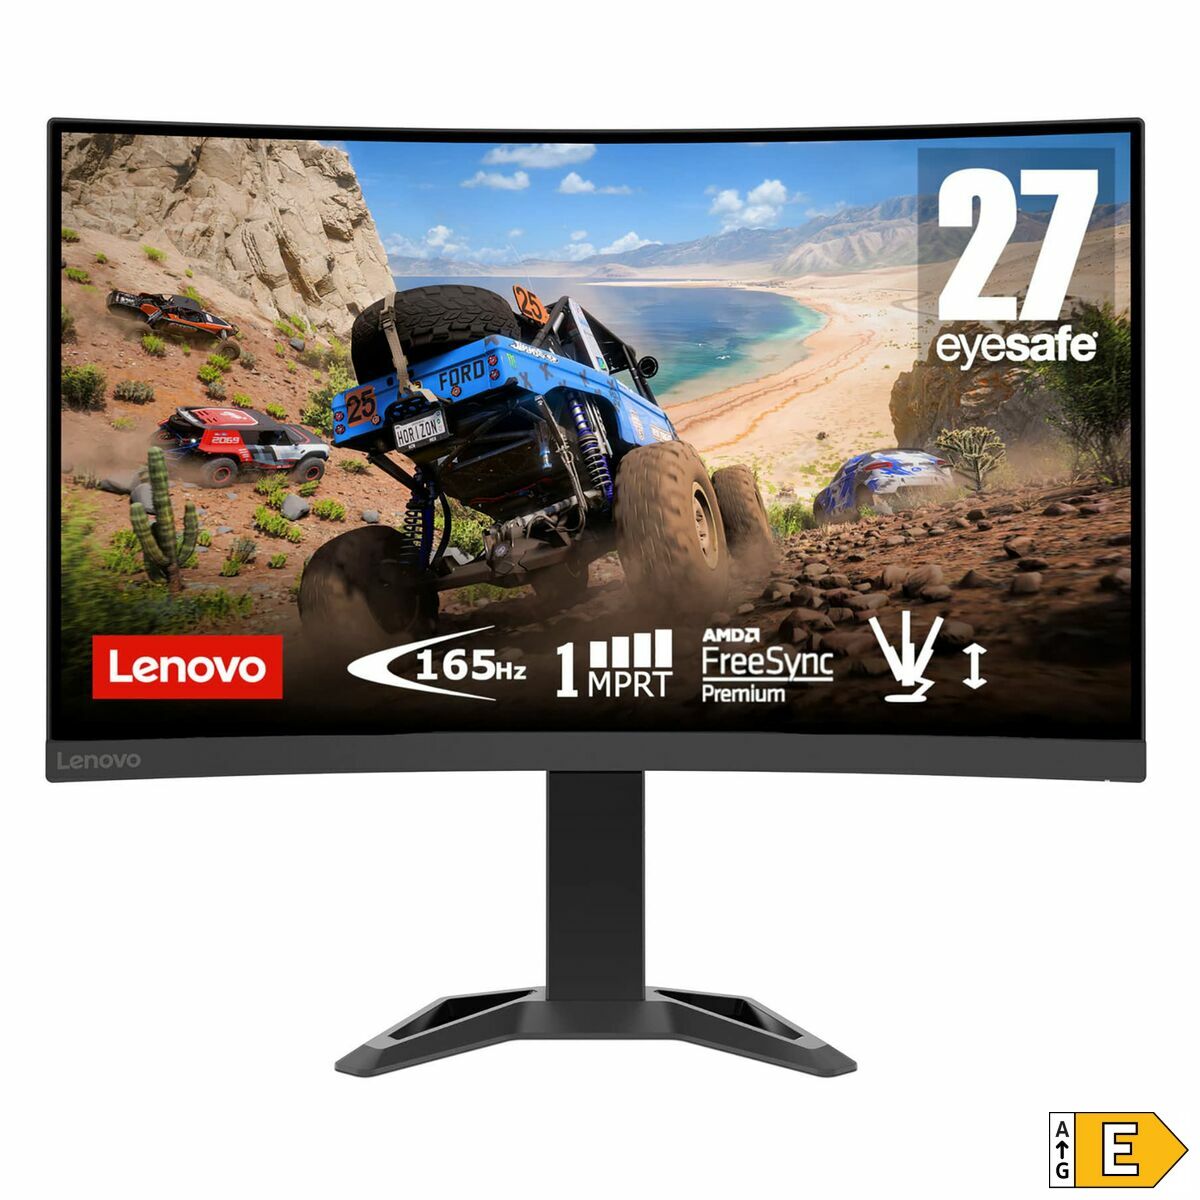 Monitors Lenovo G27c-30 27" 165 Hz